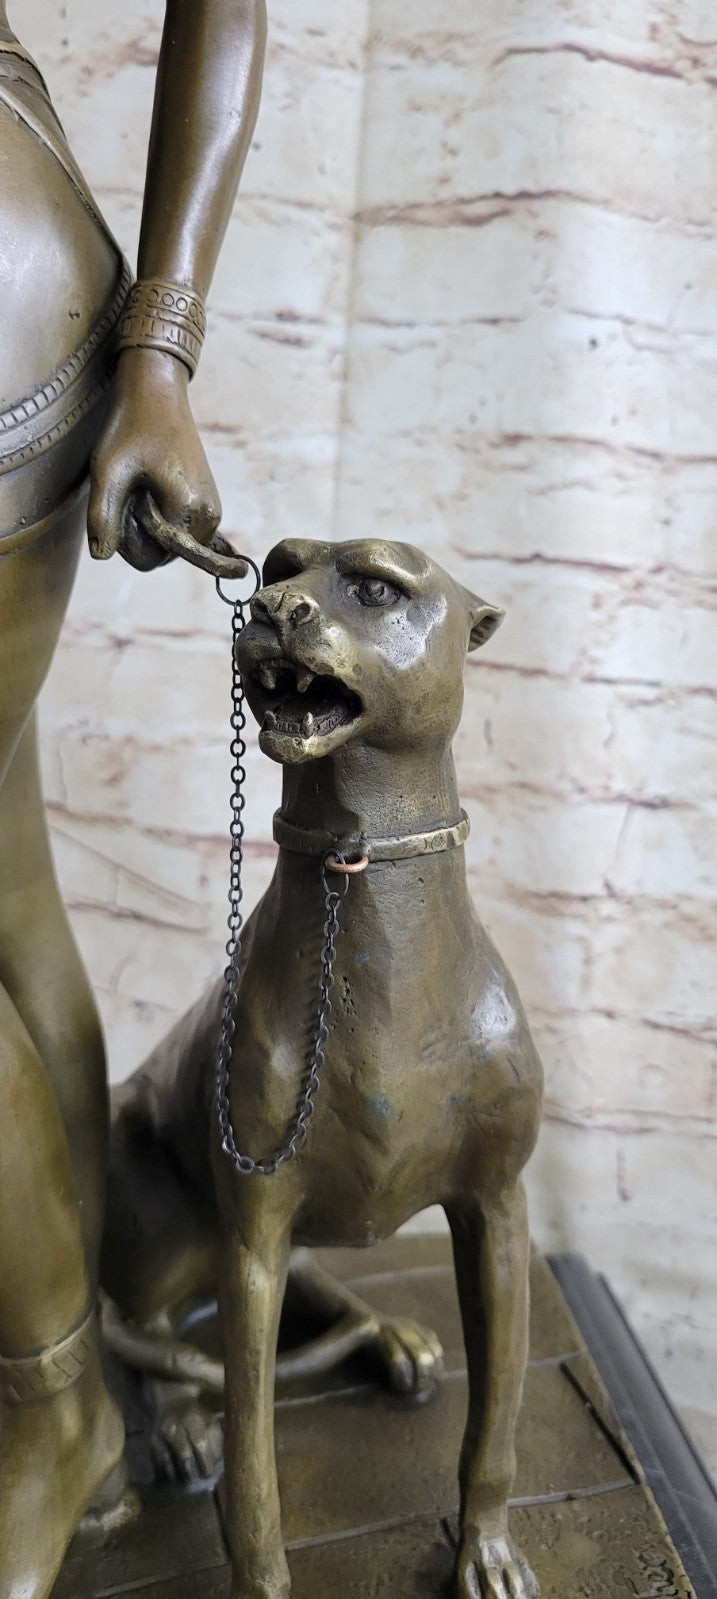 European Design Egyptian Panther Goddess Figurine Hot Cast Bronze Sculpture Sale